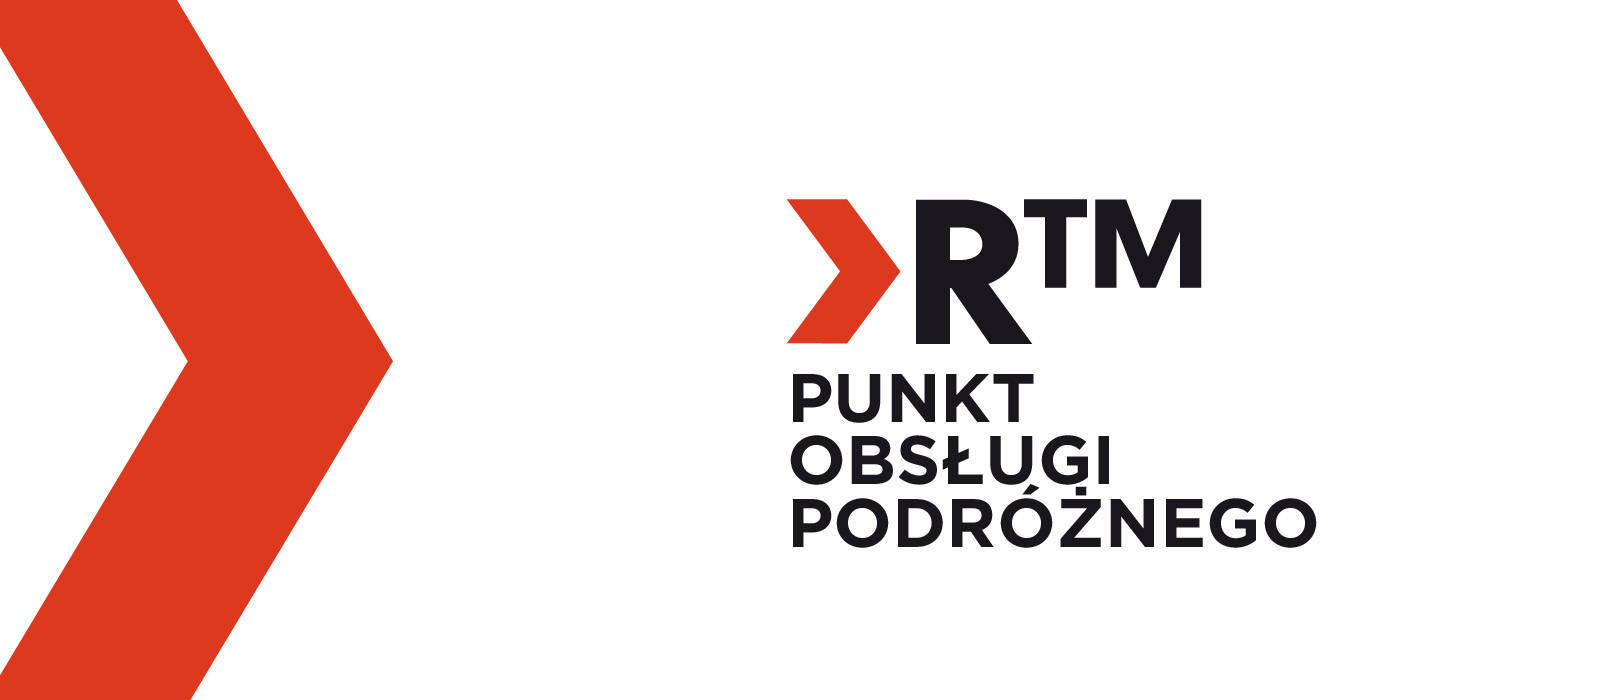 Otwarcie RTM - Punktu Obsługi Podróżnego - 1